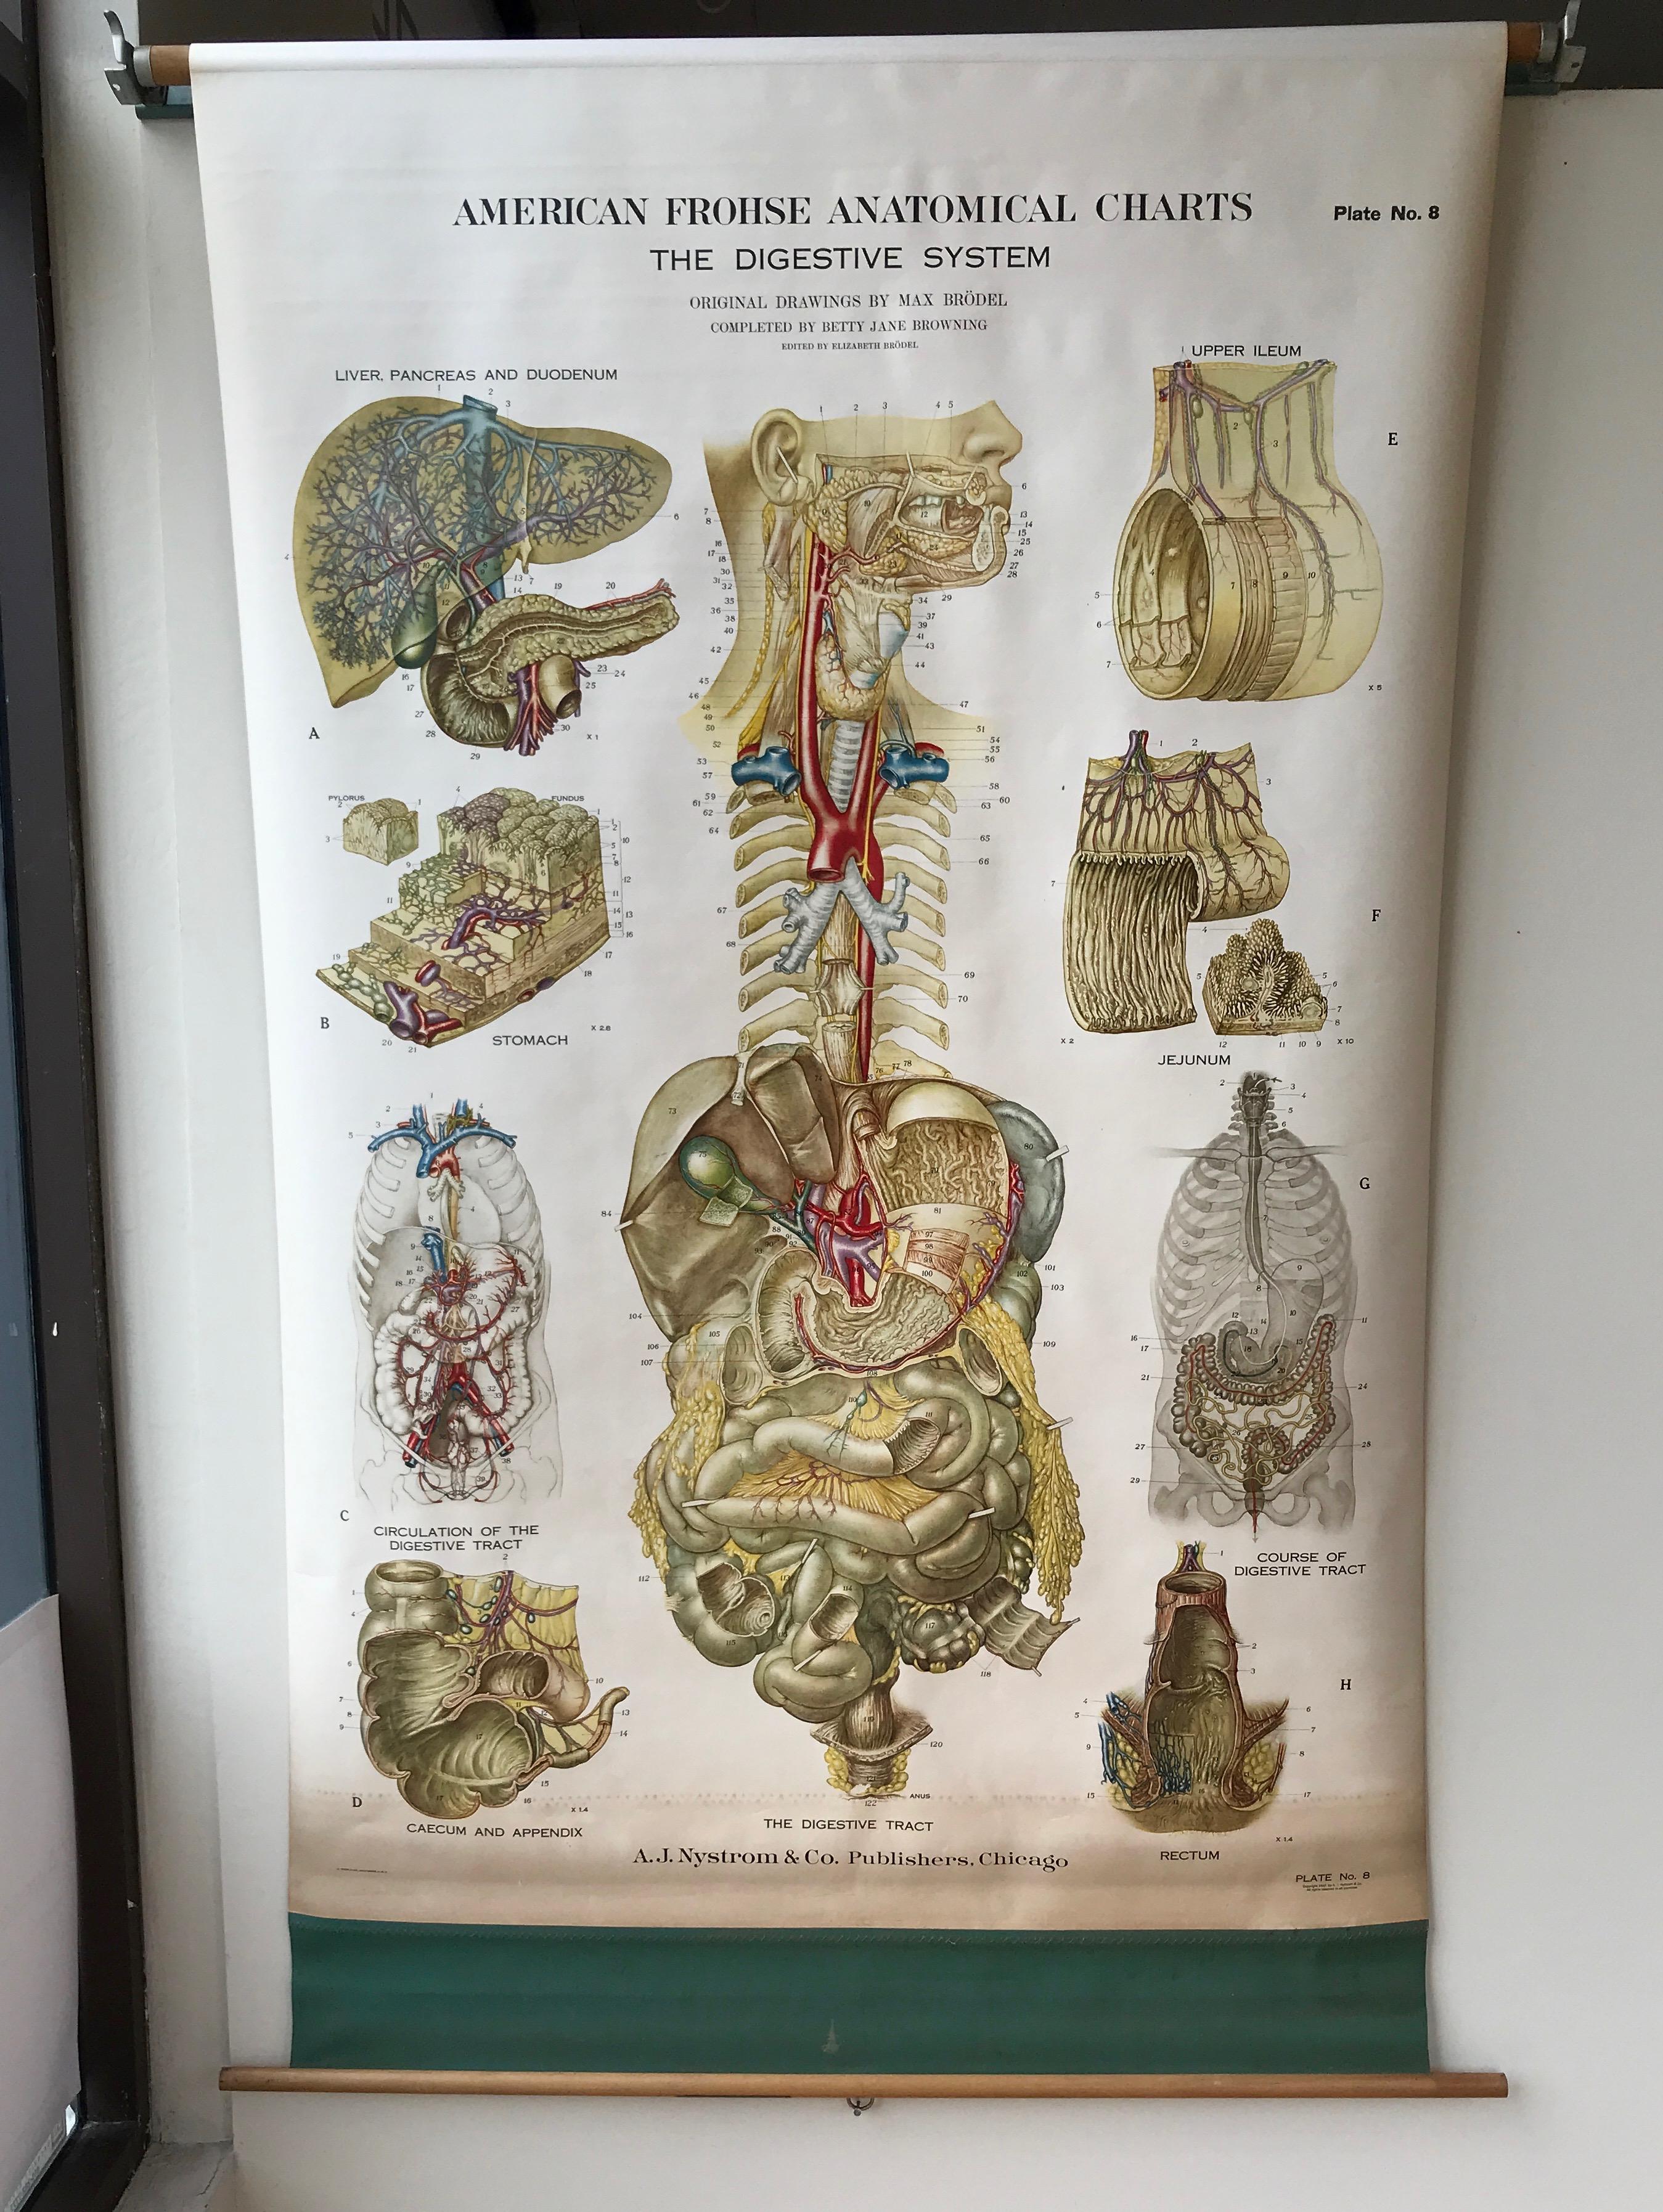 Une carte anatomique américaine Frohse de taille impressionnante et méticuleusement exécutée, représentant le système digestif humain, publiée par A.J. Nystrom & Co., Chicago.

Plaque n° 8 d'une série influente de grandes lithographies en couleur